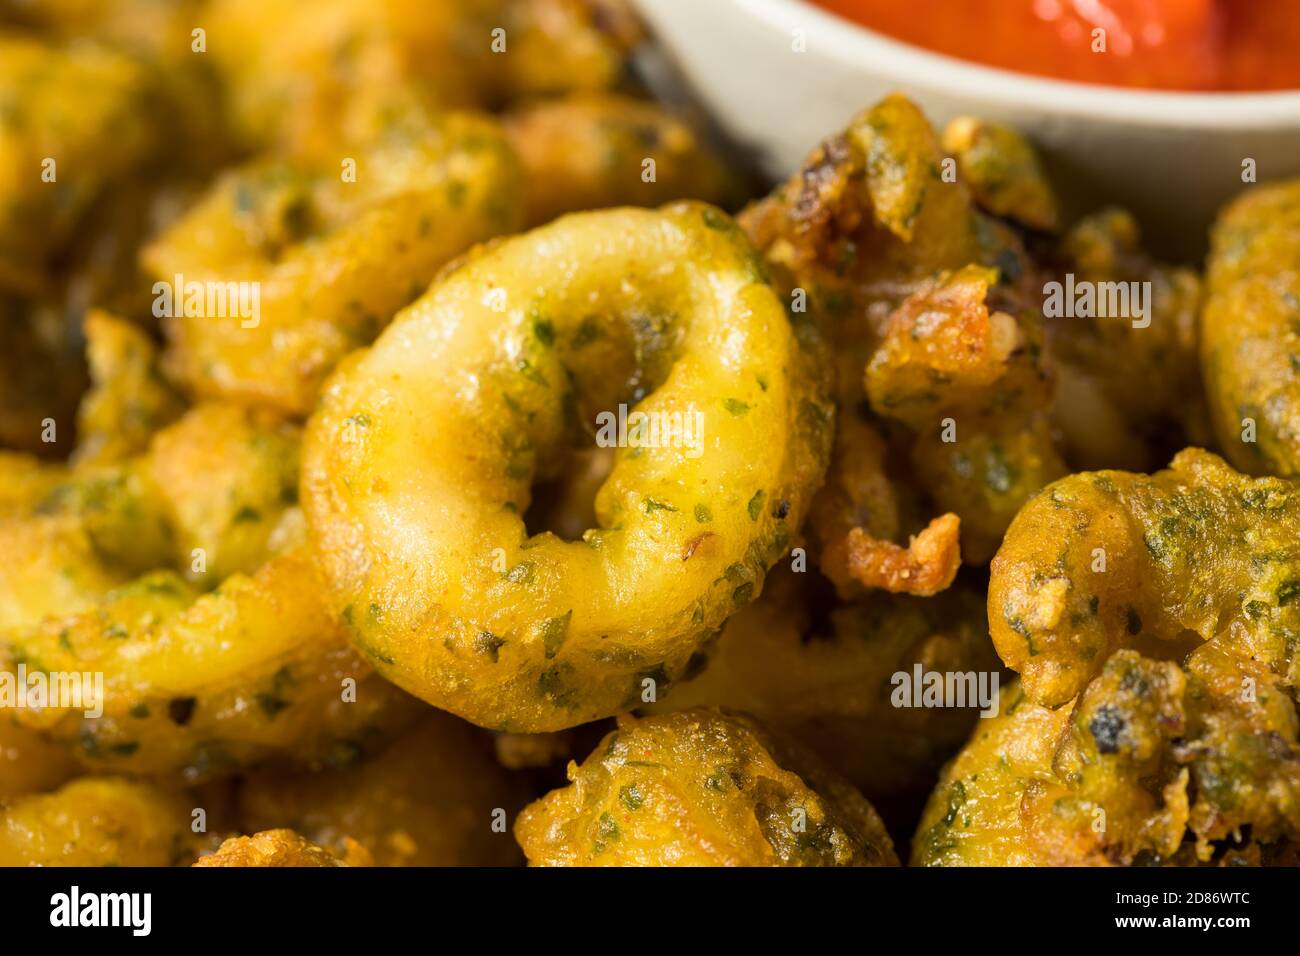 Homemade Deep Fried Calamari Appetizer with Marinara Sauce Stock Photo